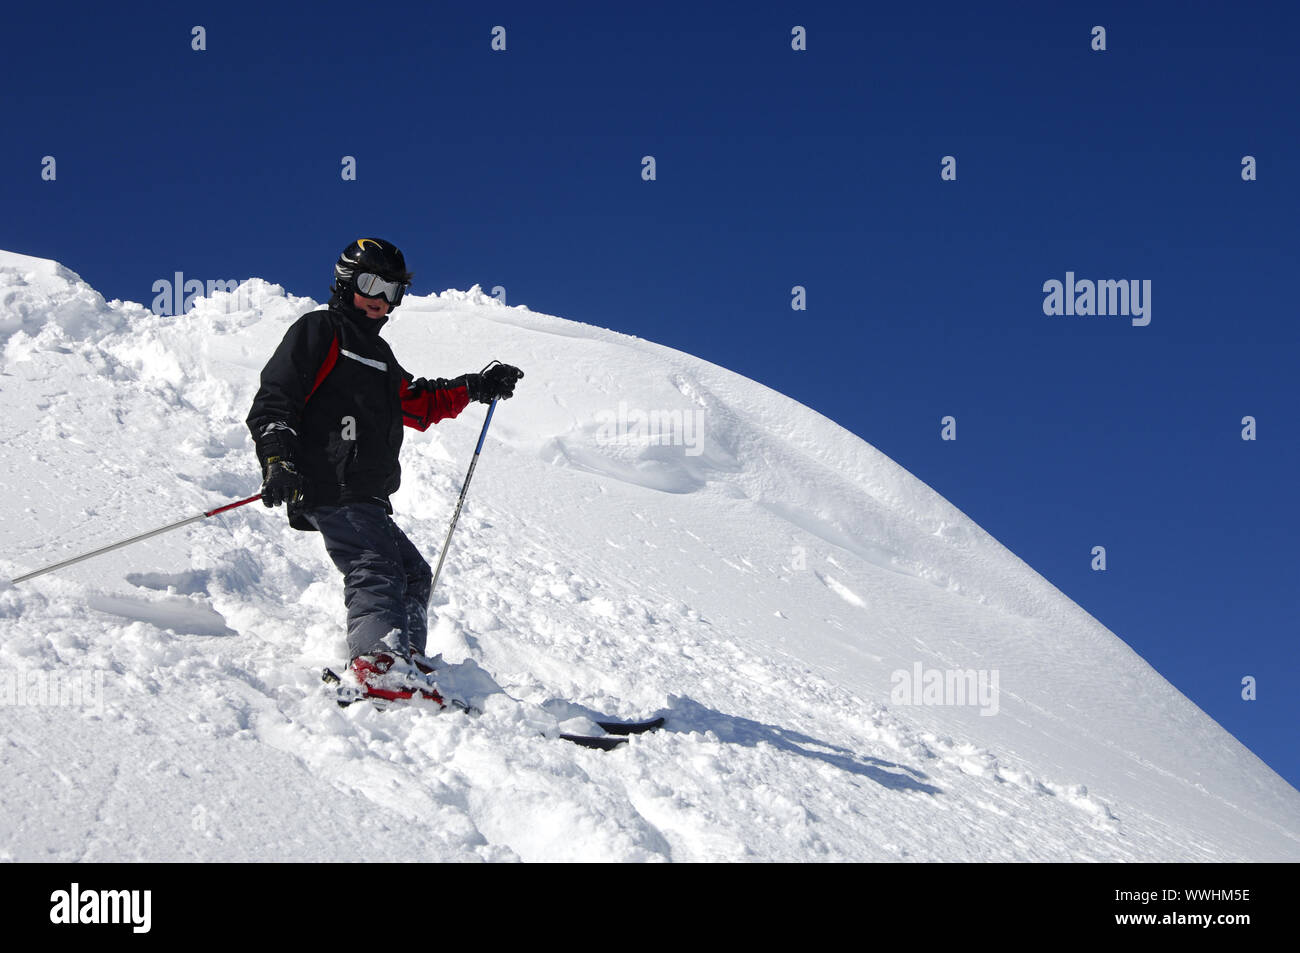 12-año-viejo muchacho esquiar en nieve profunda Foto de stock